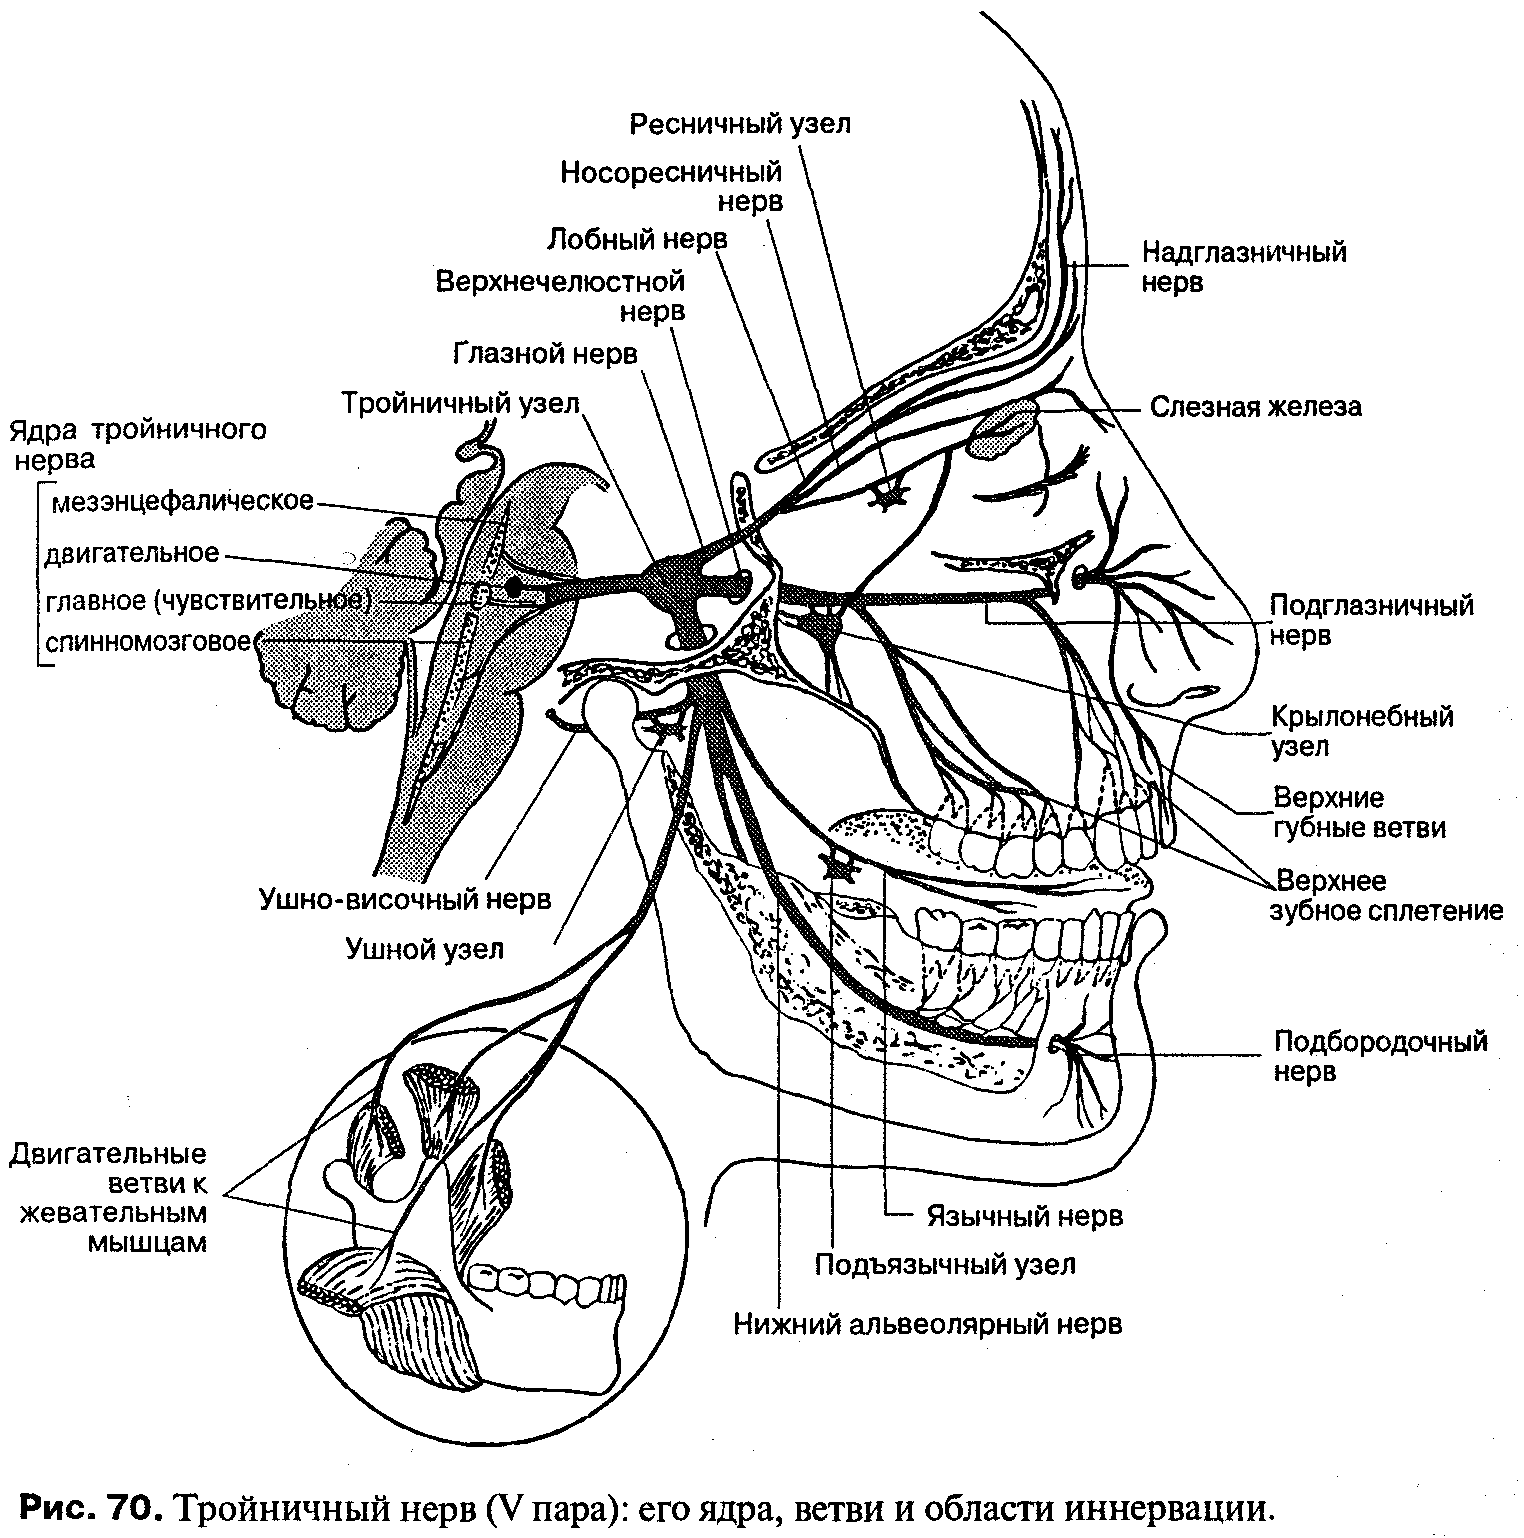 Нервы лицевого черепа. Ветви тройничного нерва анатомия. Схема проекции ветвей тройничного нерва. Иннервация тройничного нерва схема. Узлы тройничного нерва анатомия.